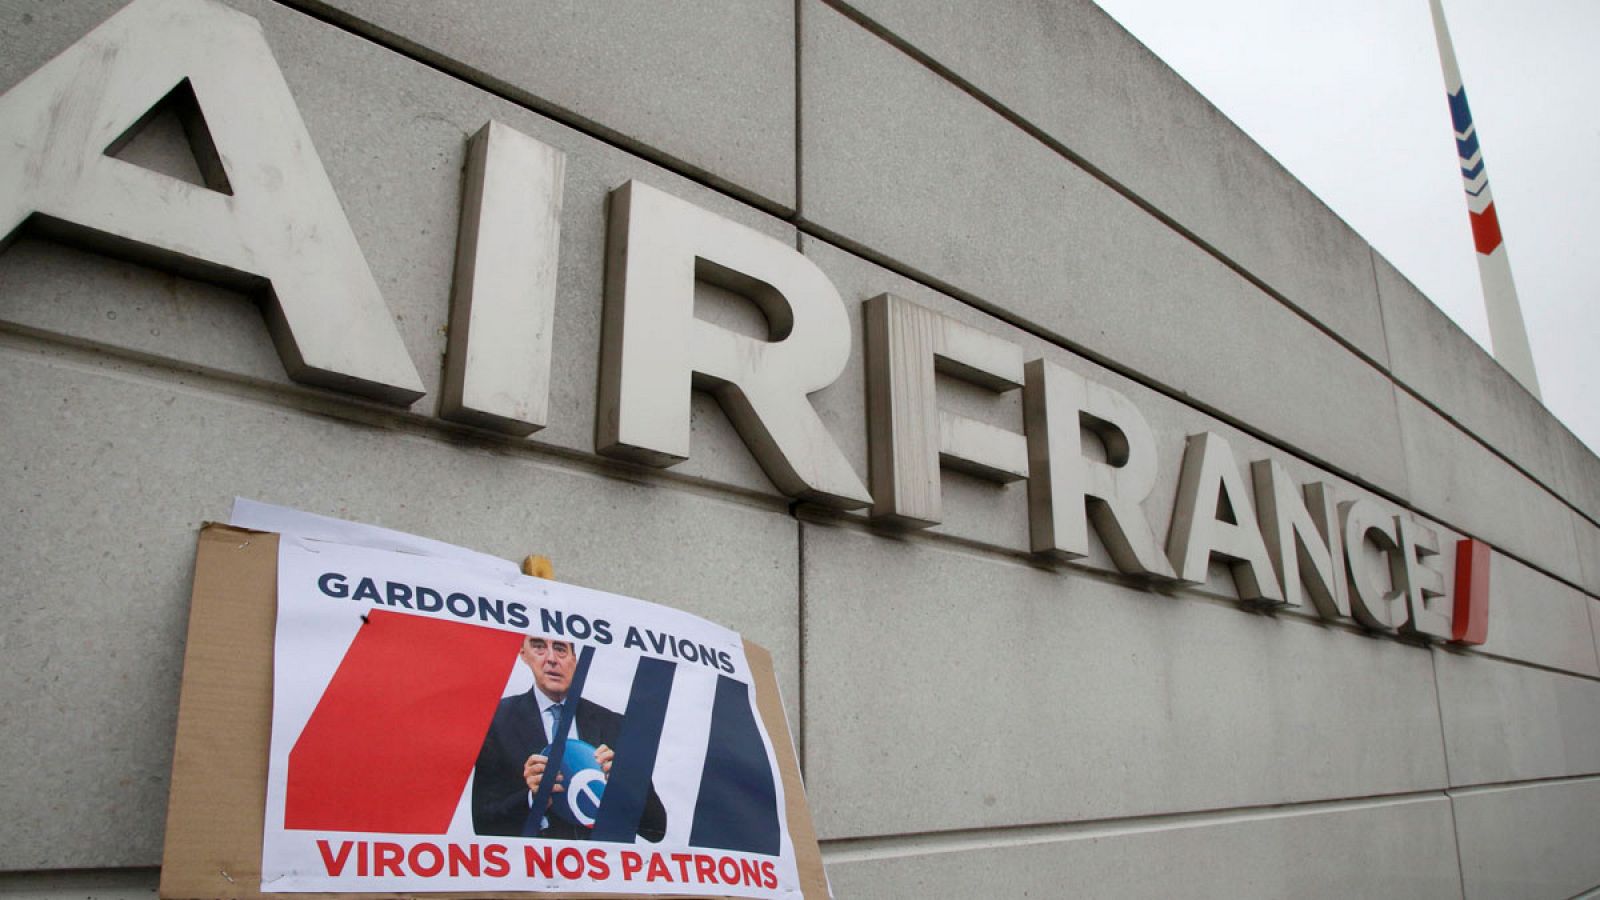 Un cartel en la sede central de Air France, con la fotografía de su consejero delegado, en el que se lee: "Conservemos los aviones, despidamos a los jefes"